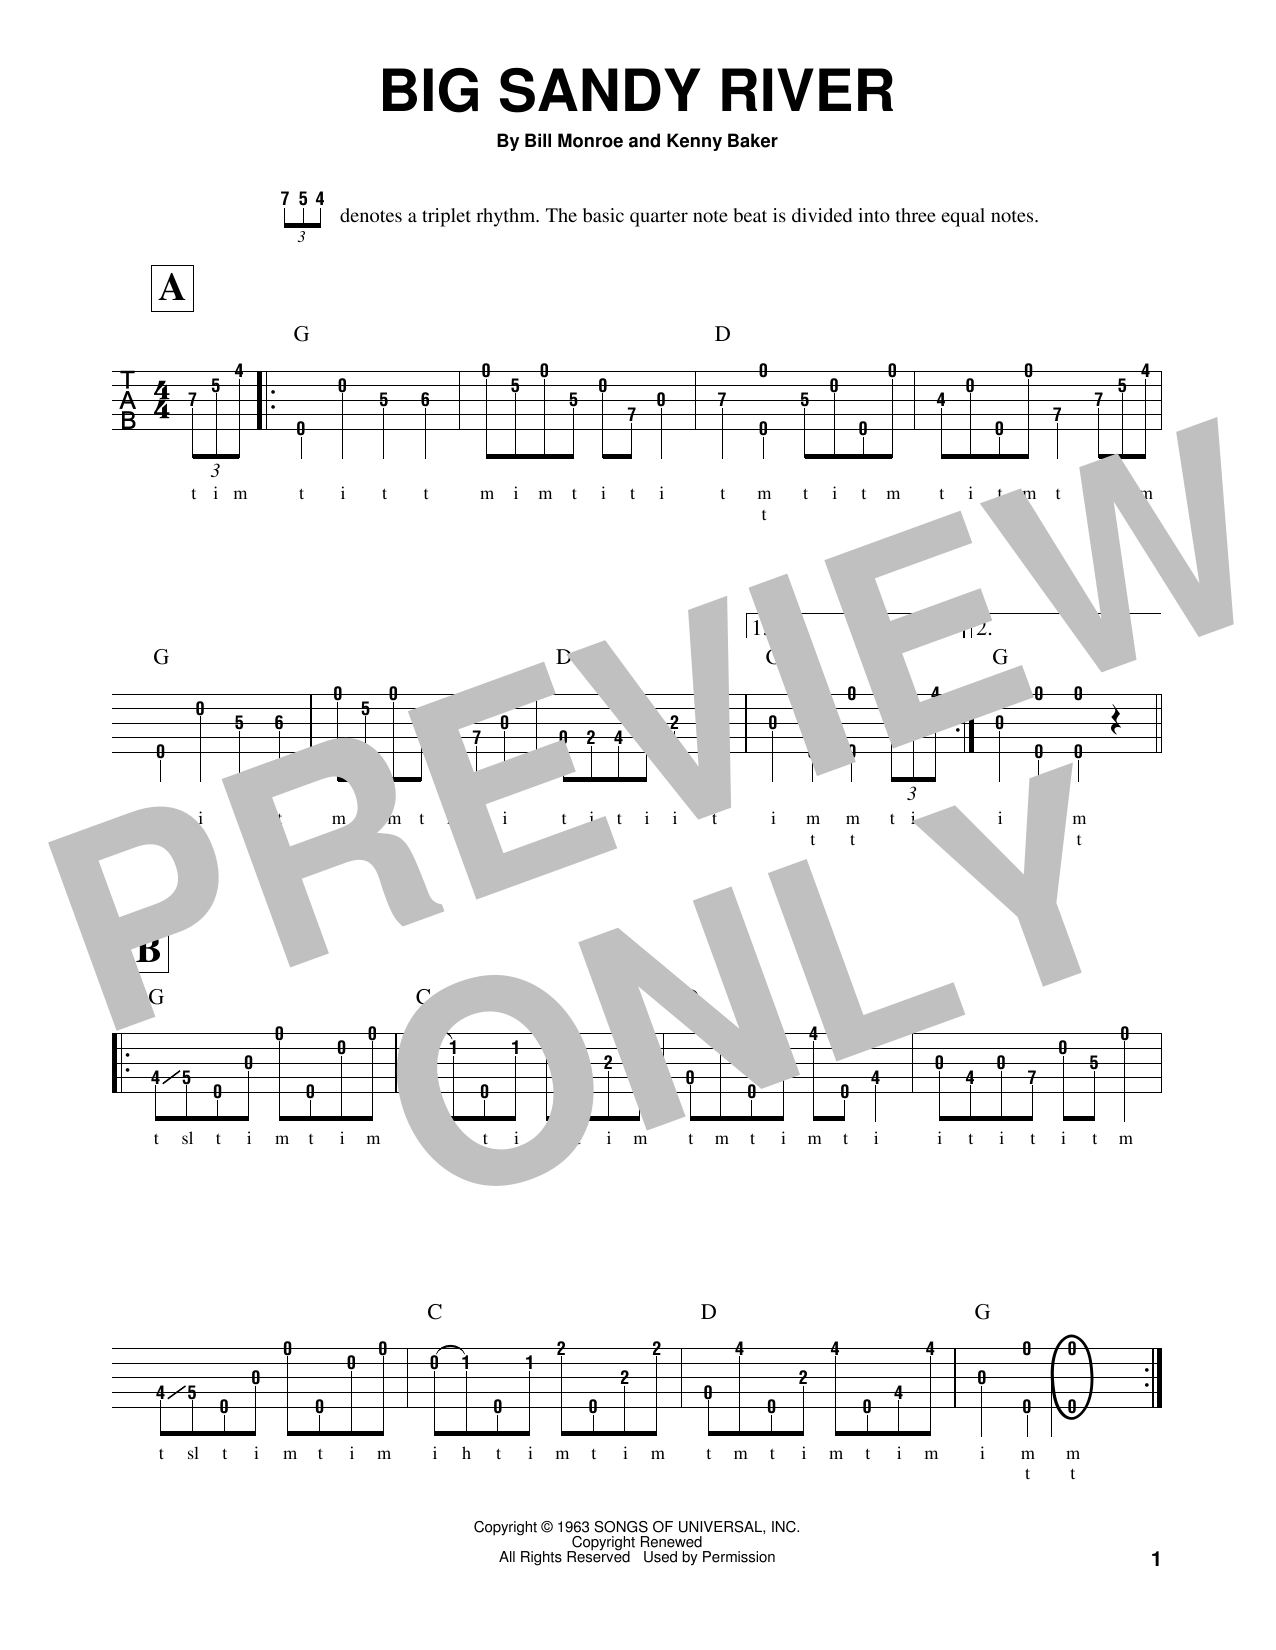 Kenny Baker Big Sandy River Sheet Music Notes & Chords for Banjo - Download or Print PDF